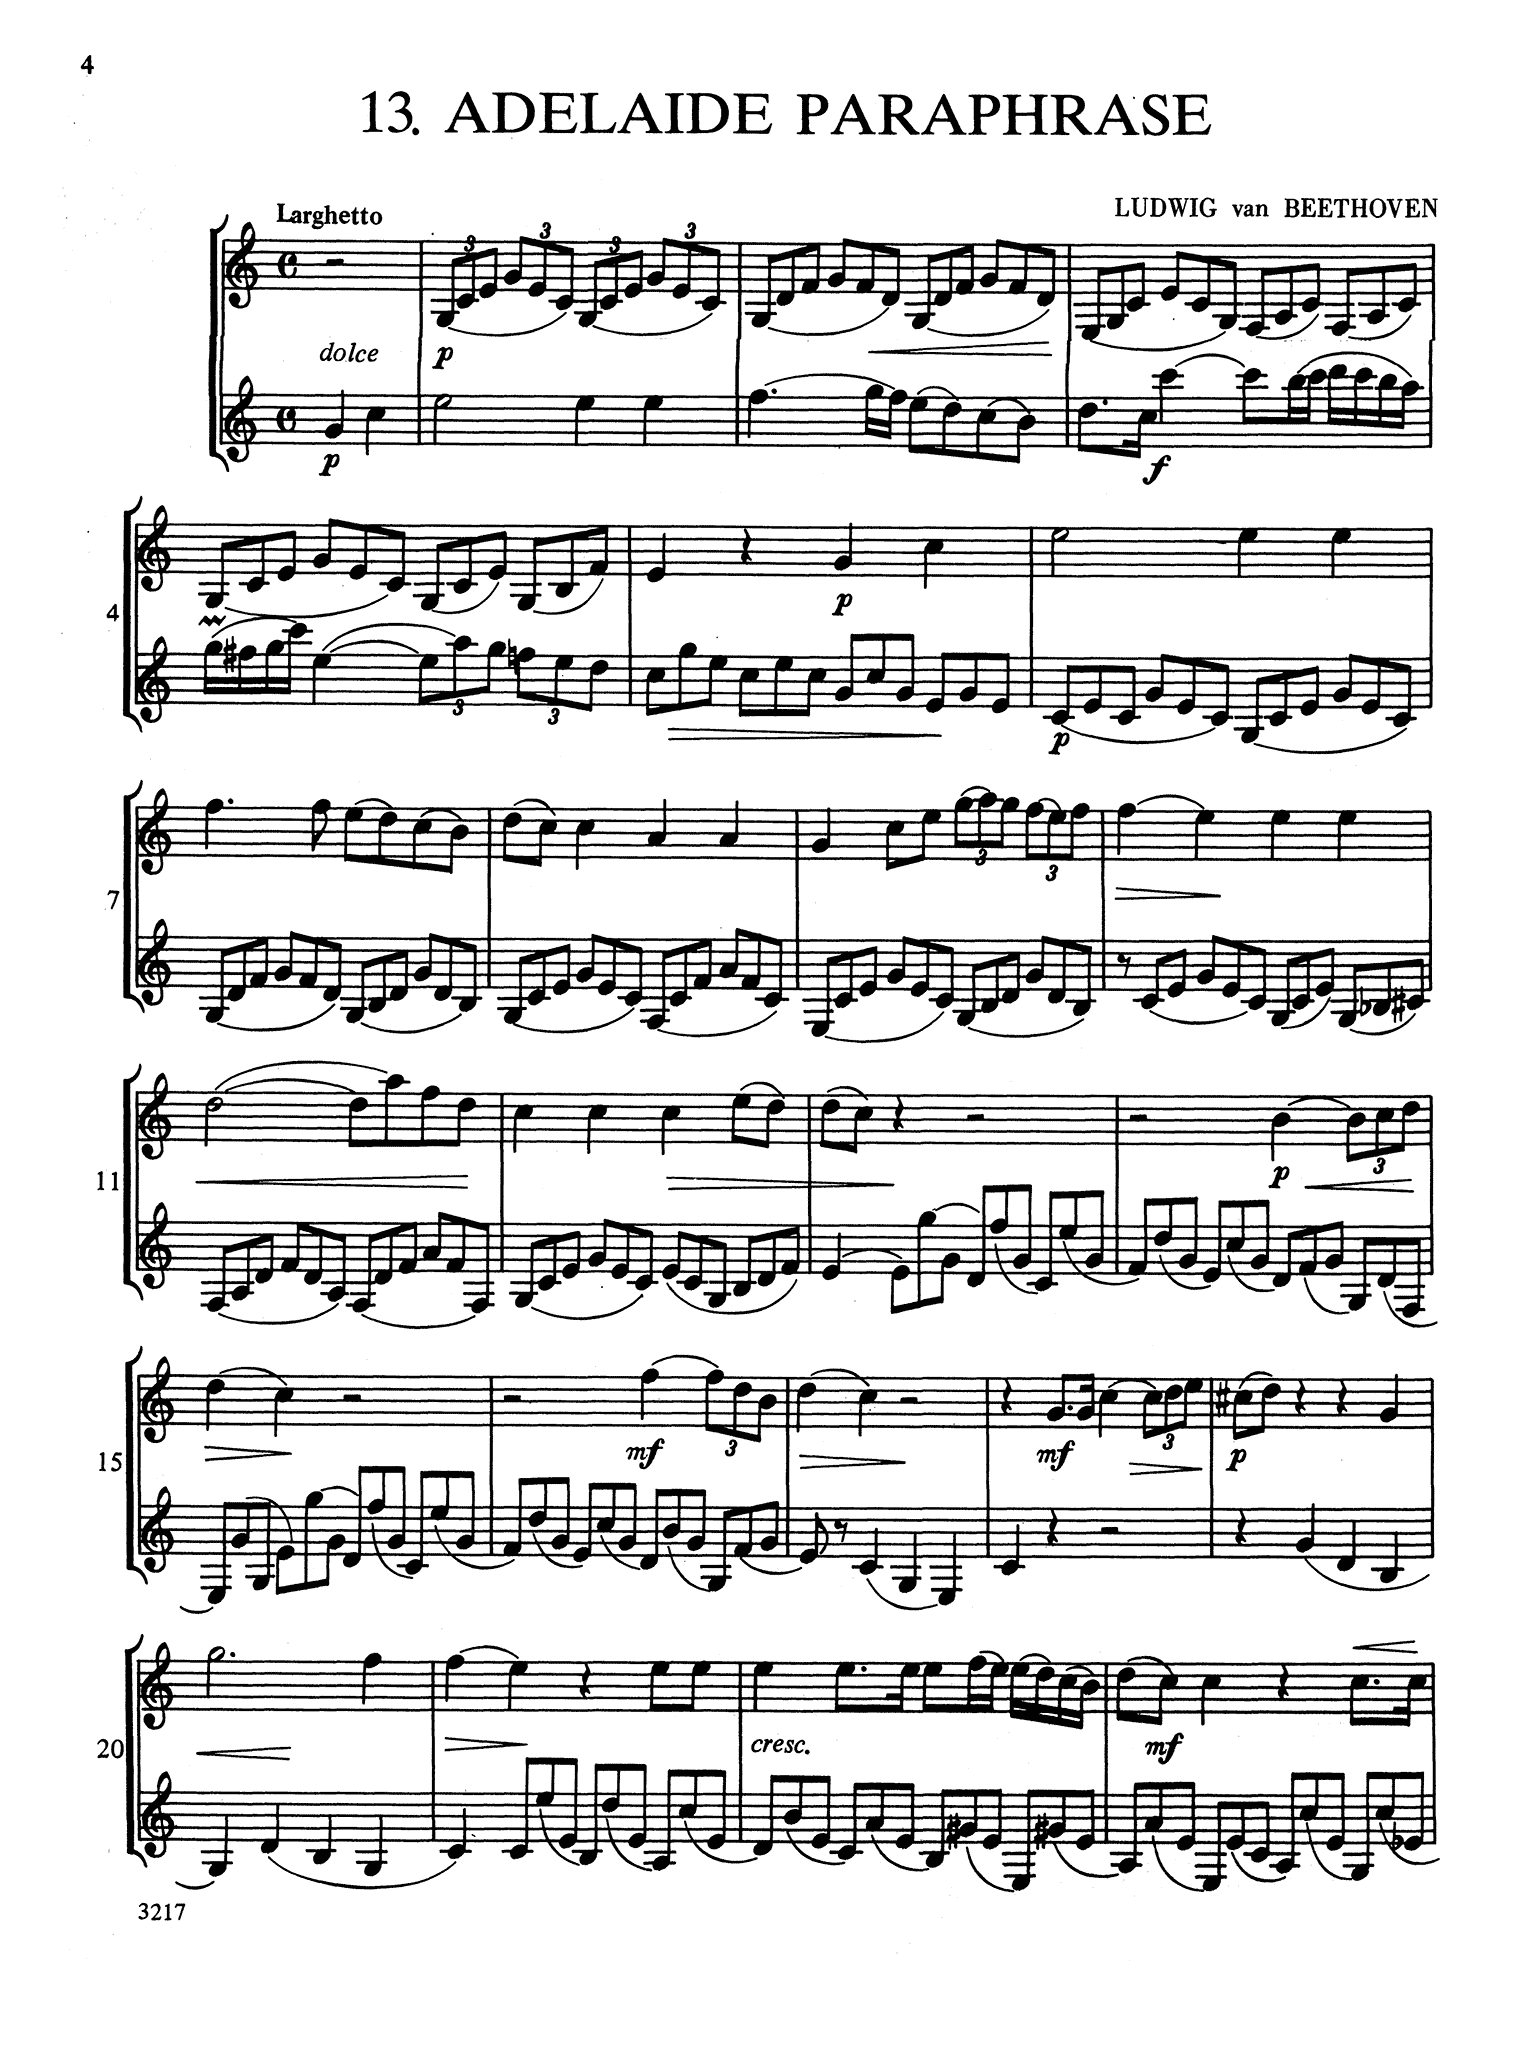 Wiedemann Clarinet Studies, Book 2 page 4